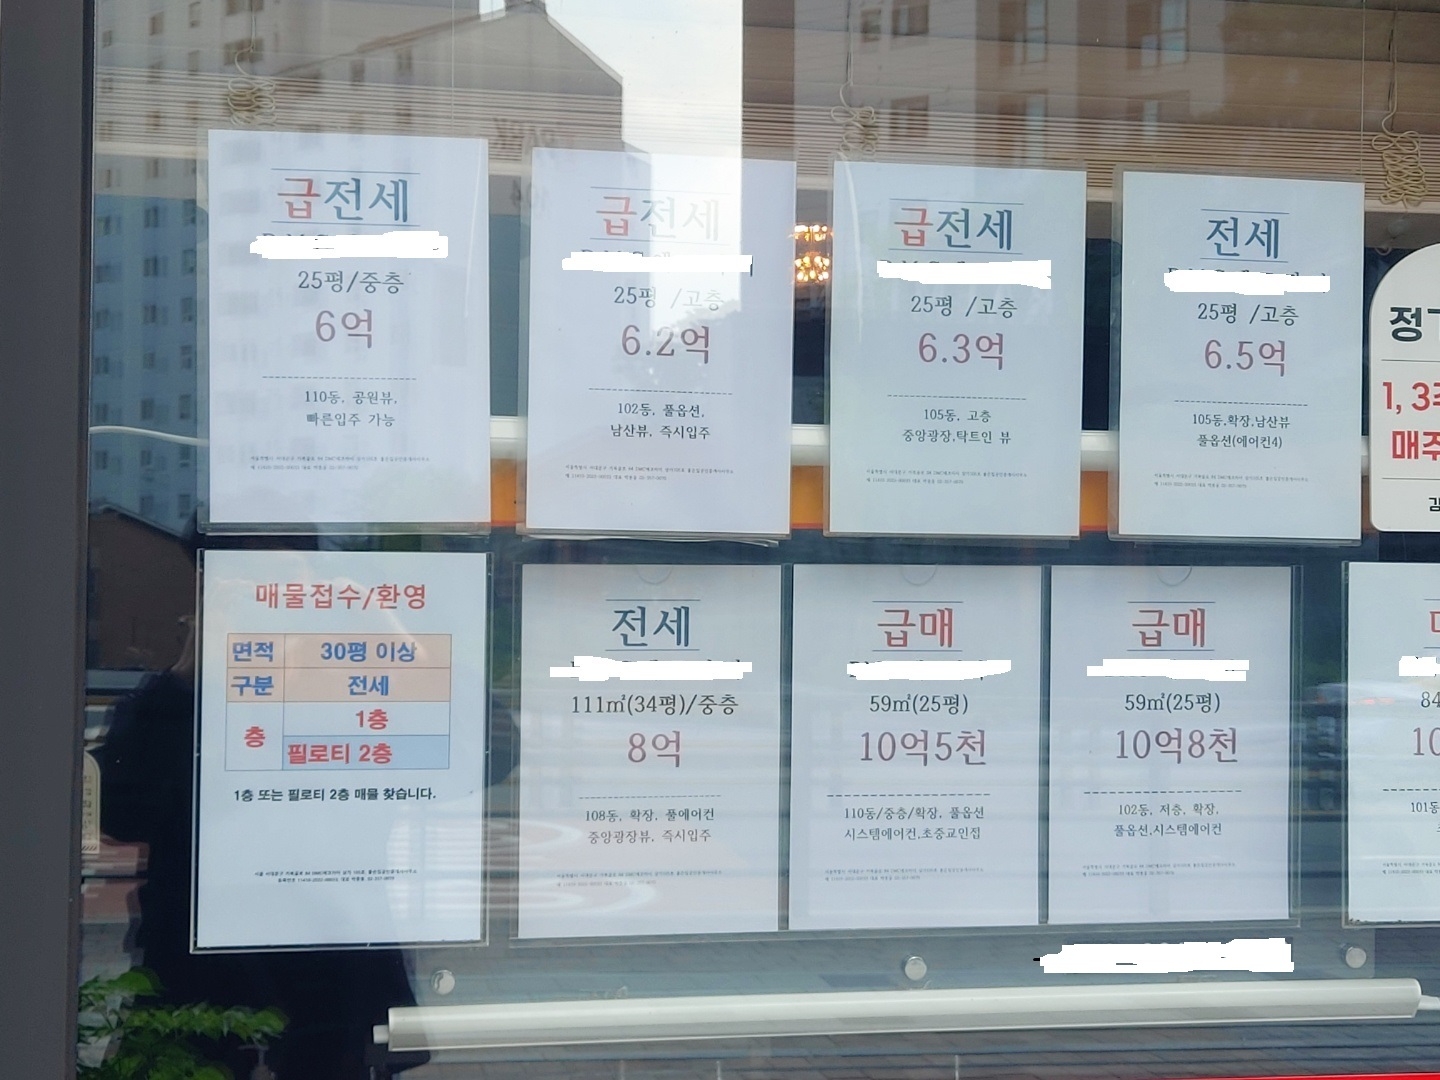 급전세 및 급매물 판매 안내가 붙은 서울 한 공인중개업소 전경./ 사진=장호성 기자